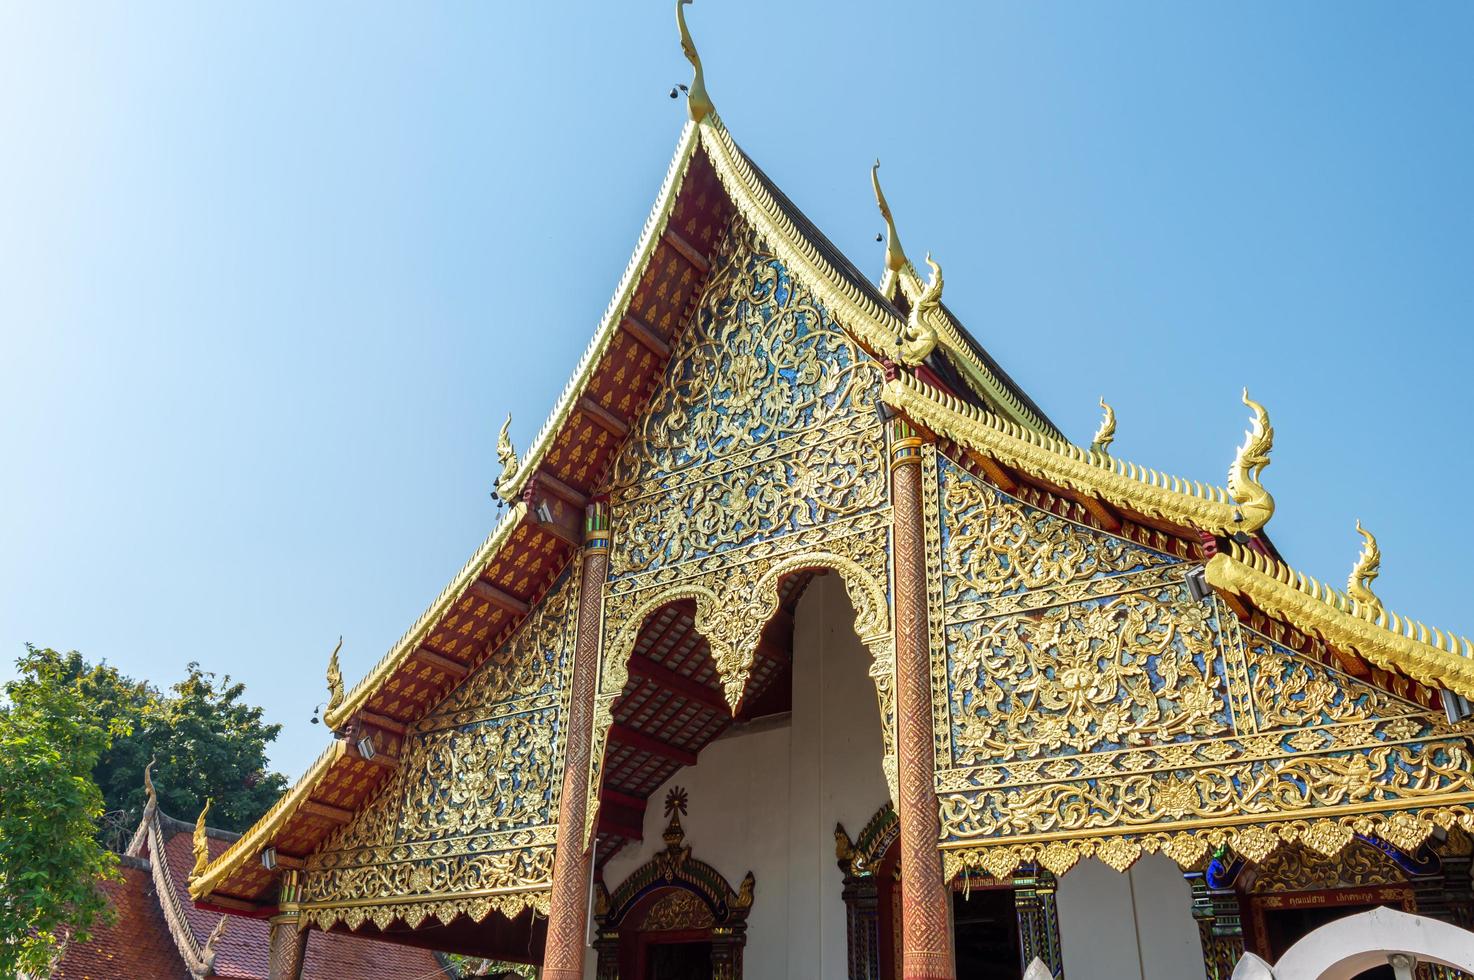 wat chiang man chiang mai thailande10 janvier 2020wat chiang man a été construit par mangrai 209 en 1297. c'était le premier temple de chiang mai où se trouvait wiang nop buri, une forteresse du peuple lawa. photo